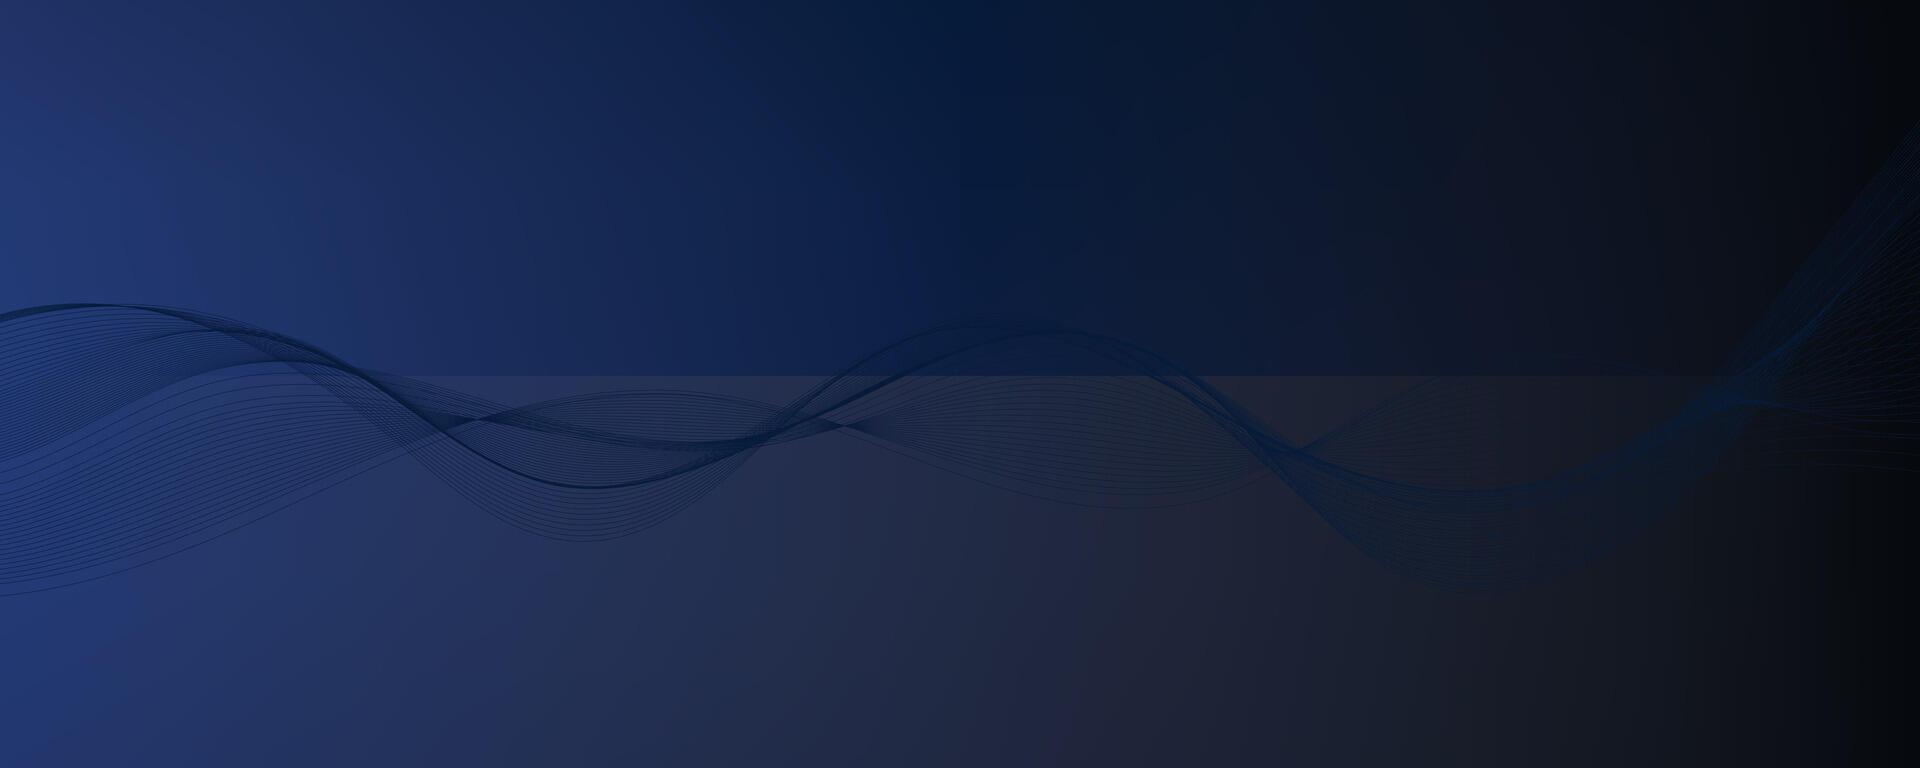 abstrato moderno fundo com azul ondulado linhas e partículas. tecnologia pano de fundo. vetor